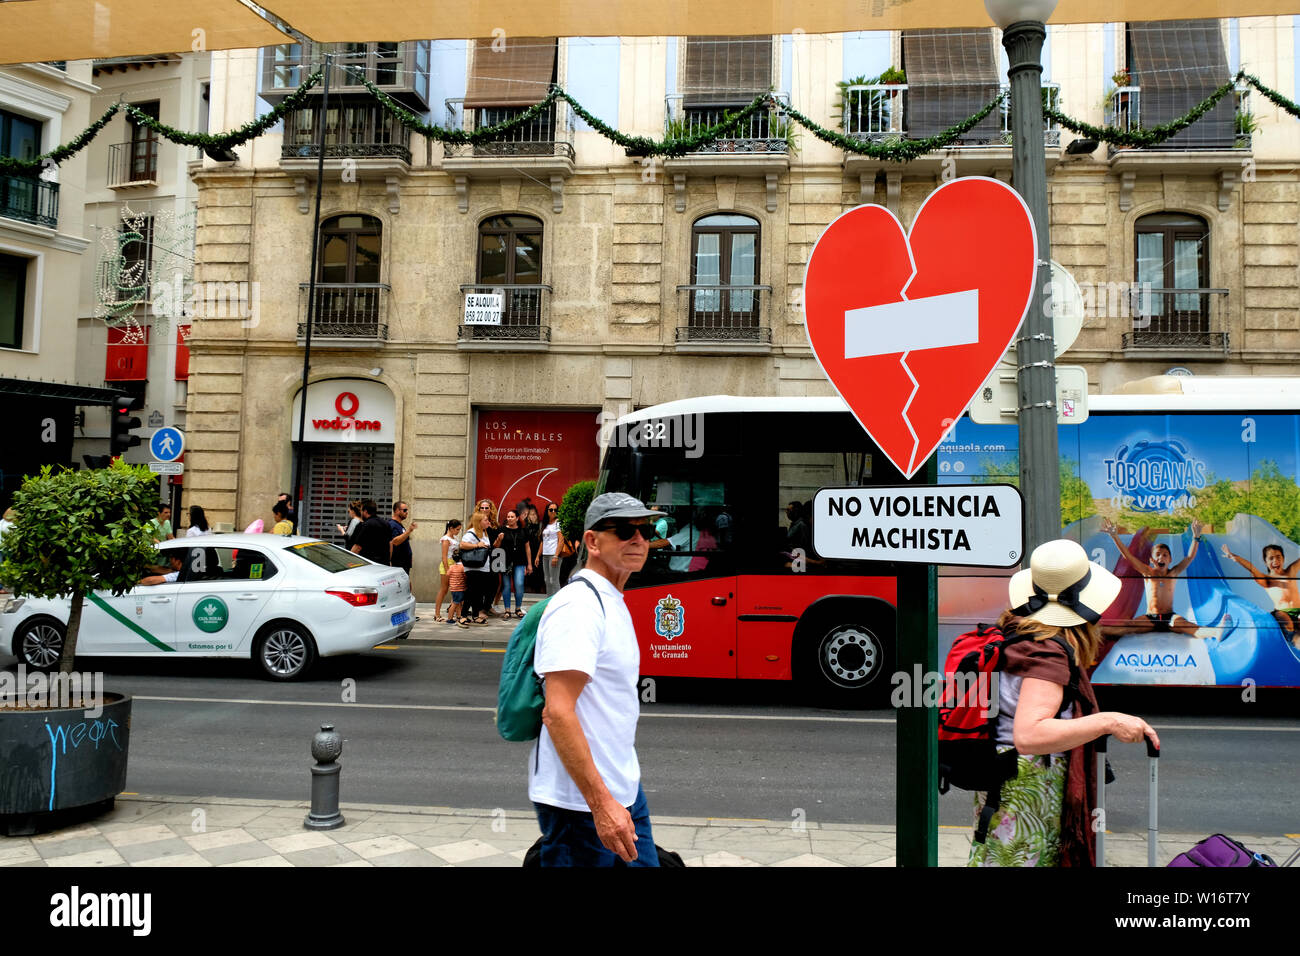 Inscrivez-vous dans la forme d'un cœur brisé pour demander la fin de la violence de genre dans le centre-ville de Grenade, Espagne ; "non violence" (no machiste la violence machiste). Banque D'Images